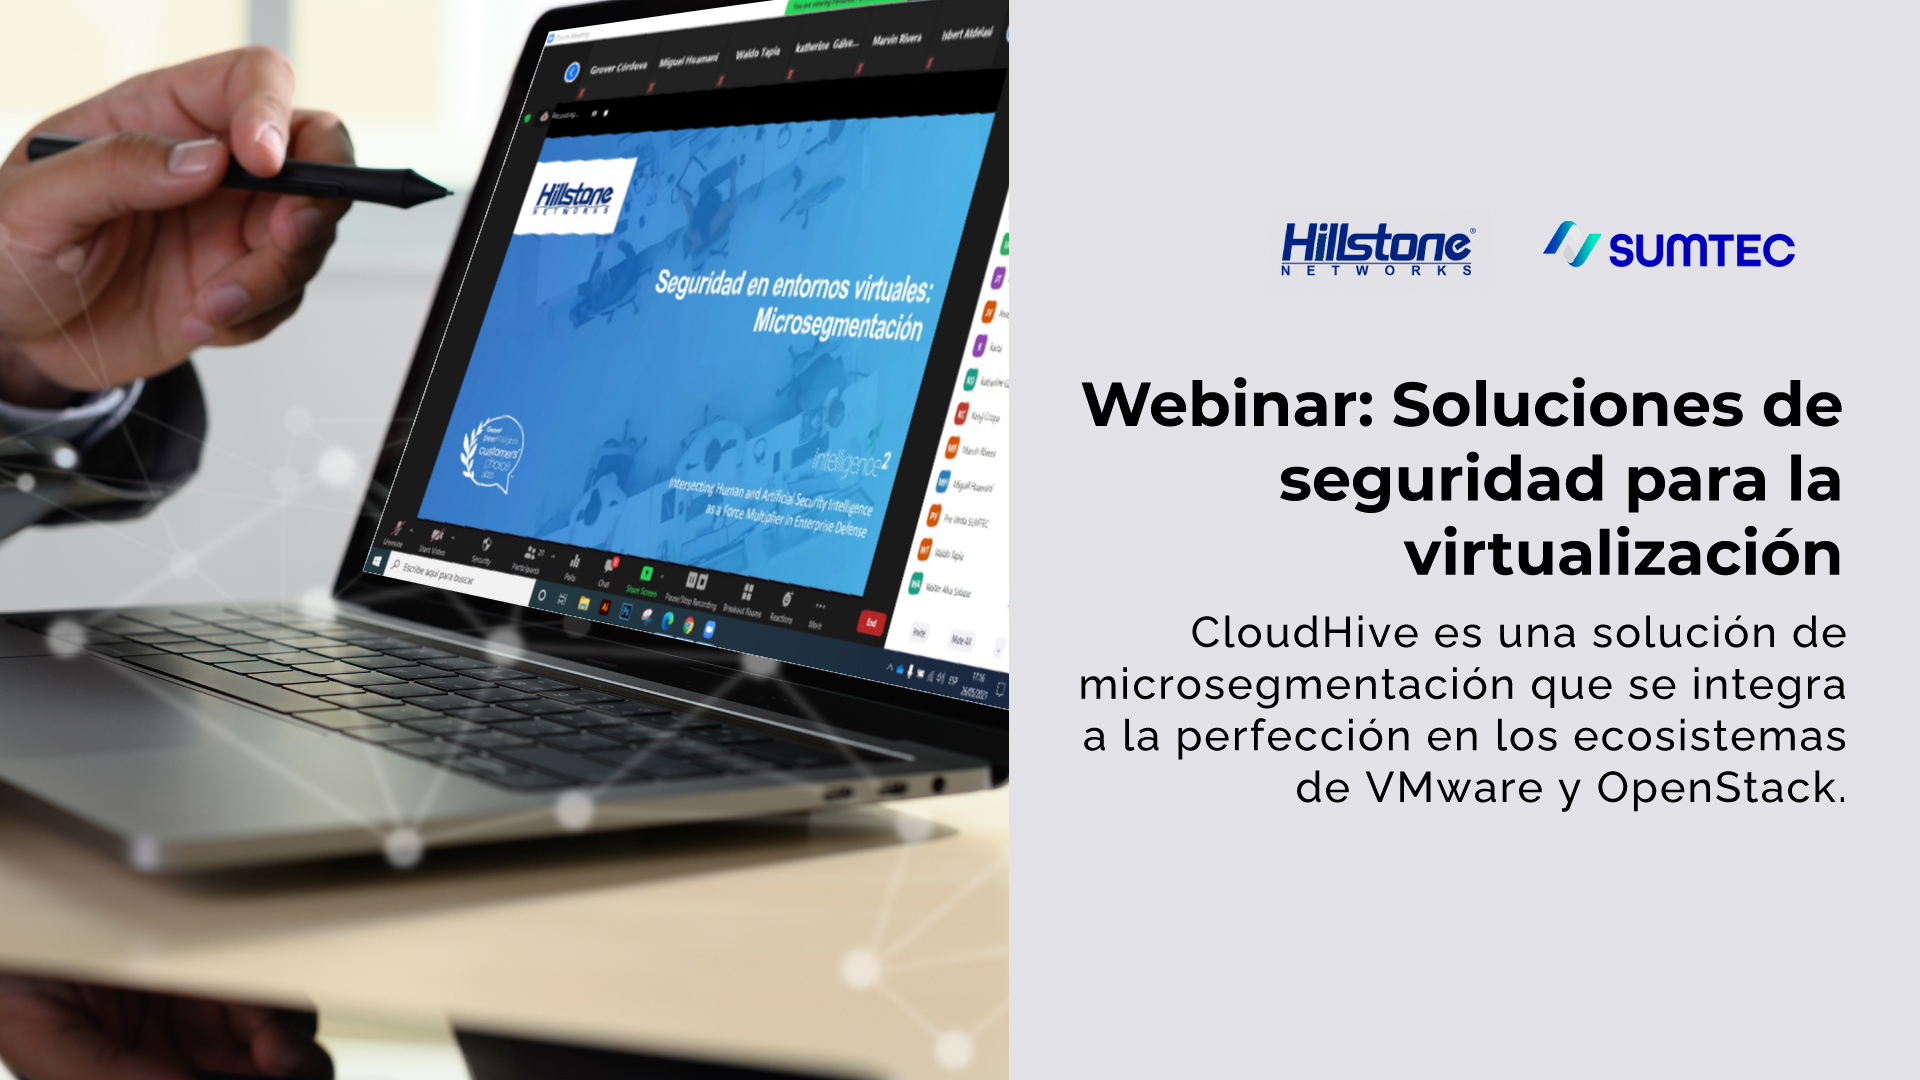 Sumtec Perú y Hillstone Networks ofrecieron webinar sobre “Soluciones de seguridad para la virtualización” a sus principales canales de negocios